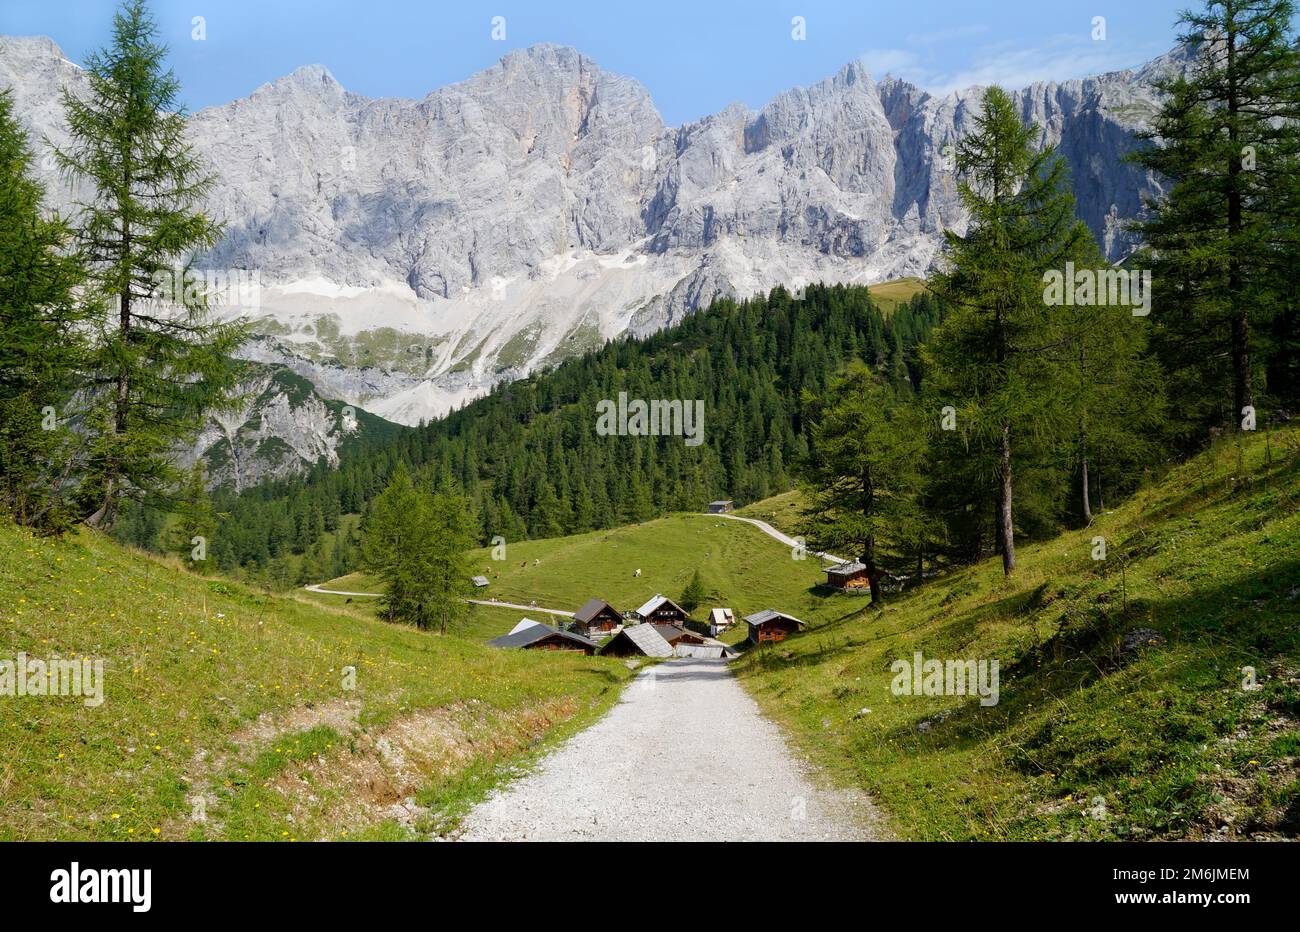 Un sentiero che conduce al pittoresco villaggio alpino Neustatt Alm o valle Neustatt ai piedi del monte Dachstein nelle Alpi austriache a Steiermark Foto Stock